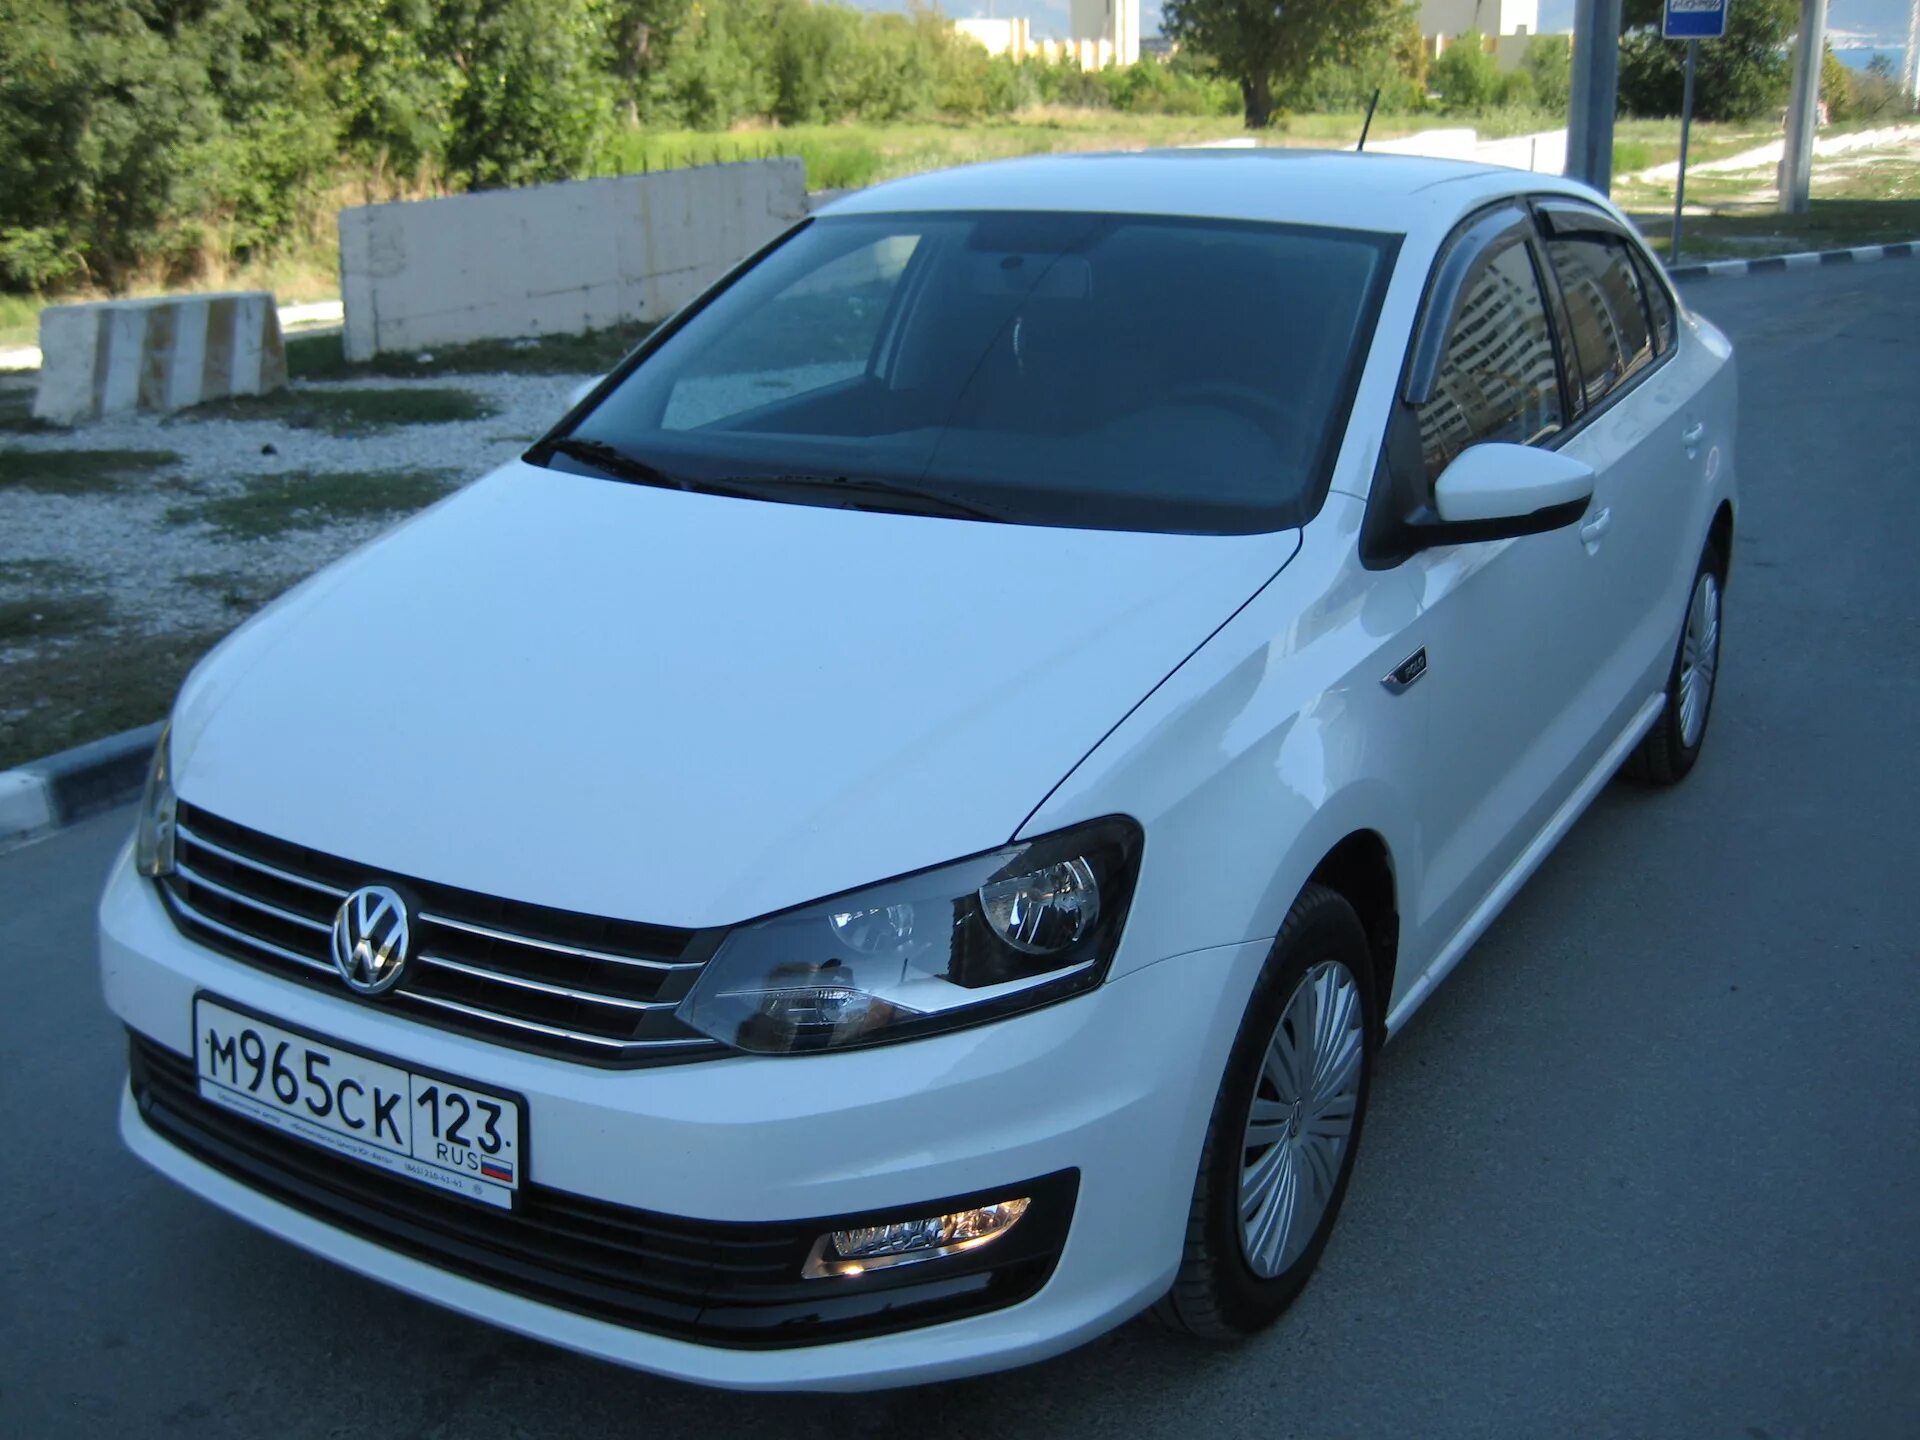 Volkswagen Polo sedan Allstar. Polo sedan 9a4. VW Polo sedan 2008. Polo sedan 9nf. Авито продажа volkswagen